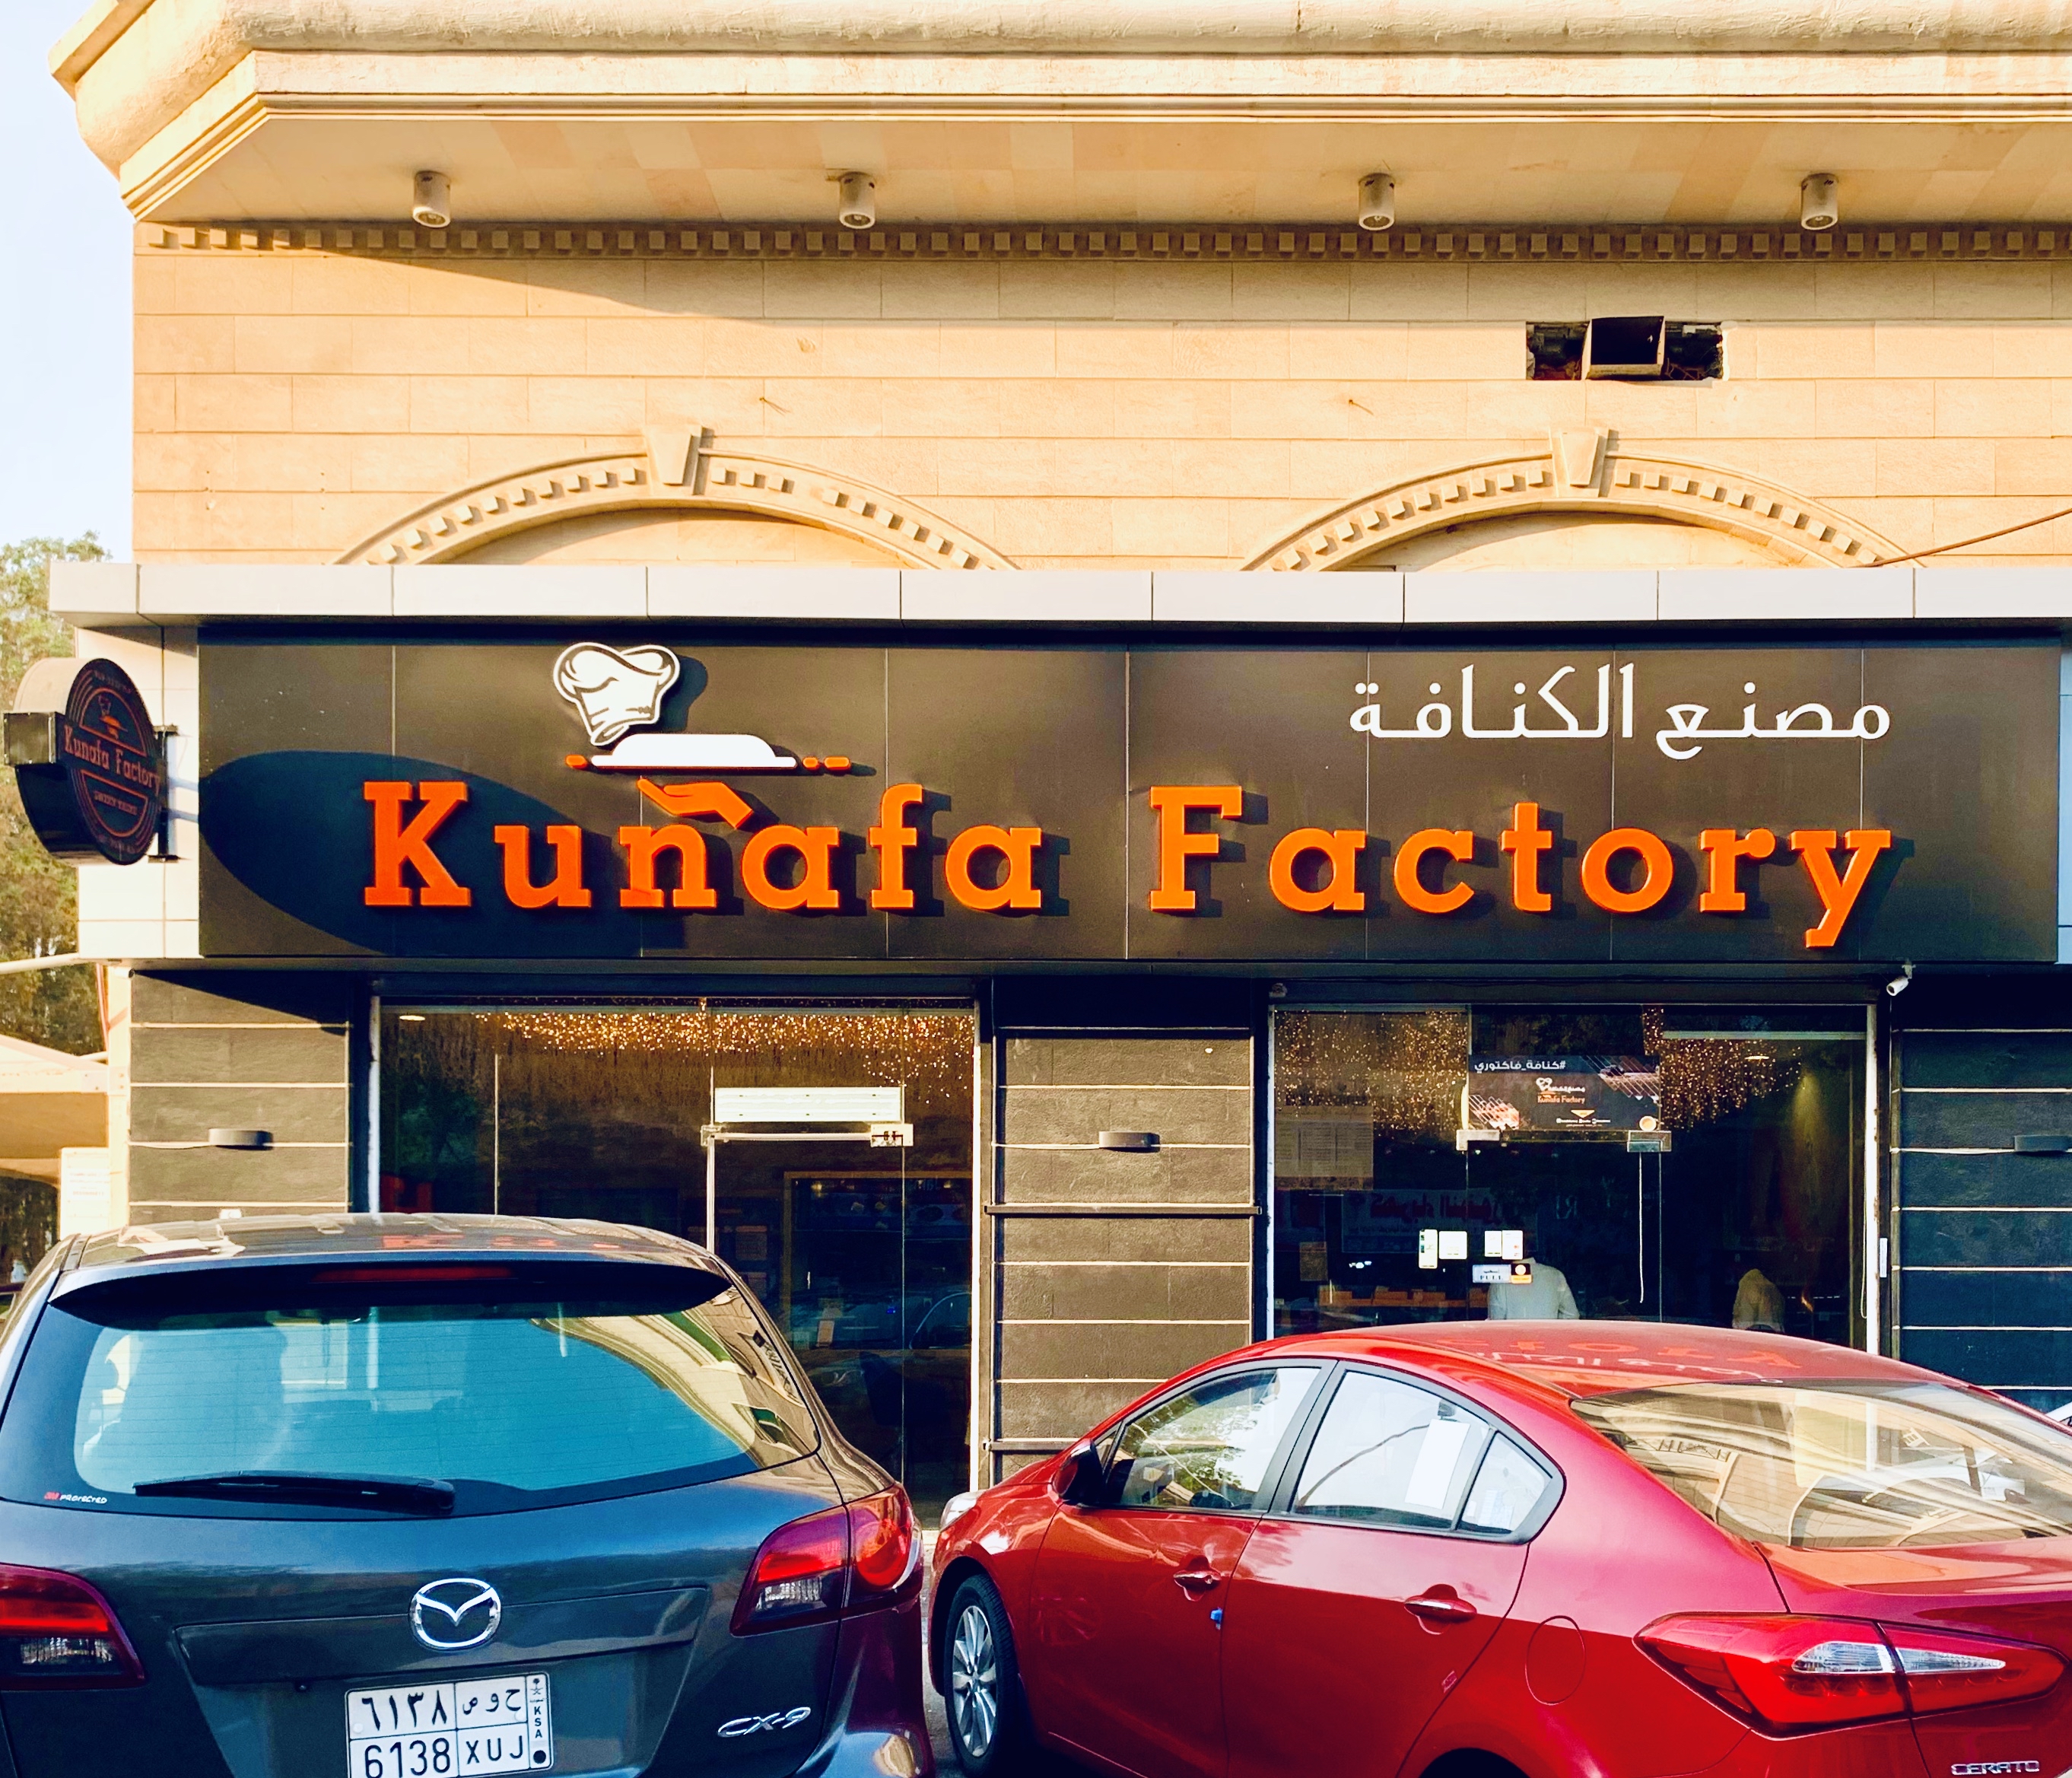 Kunafa Factory